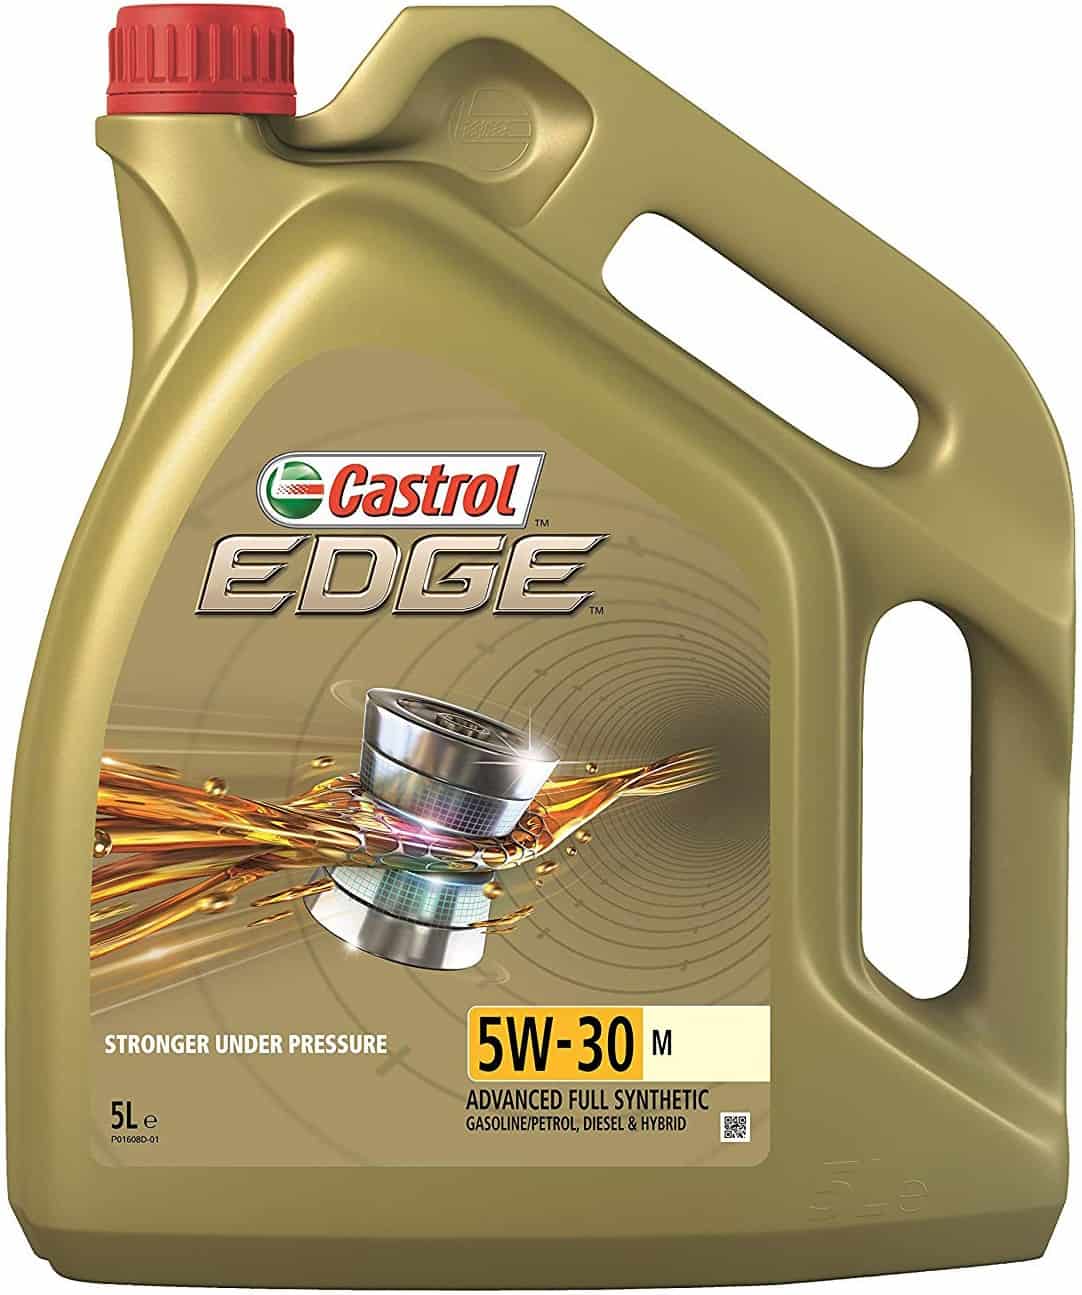 Масло Castrol Edge 5W30 M - 5 литра